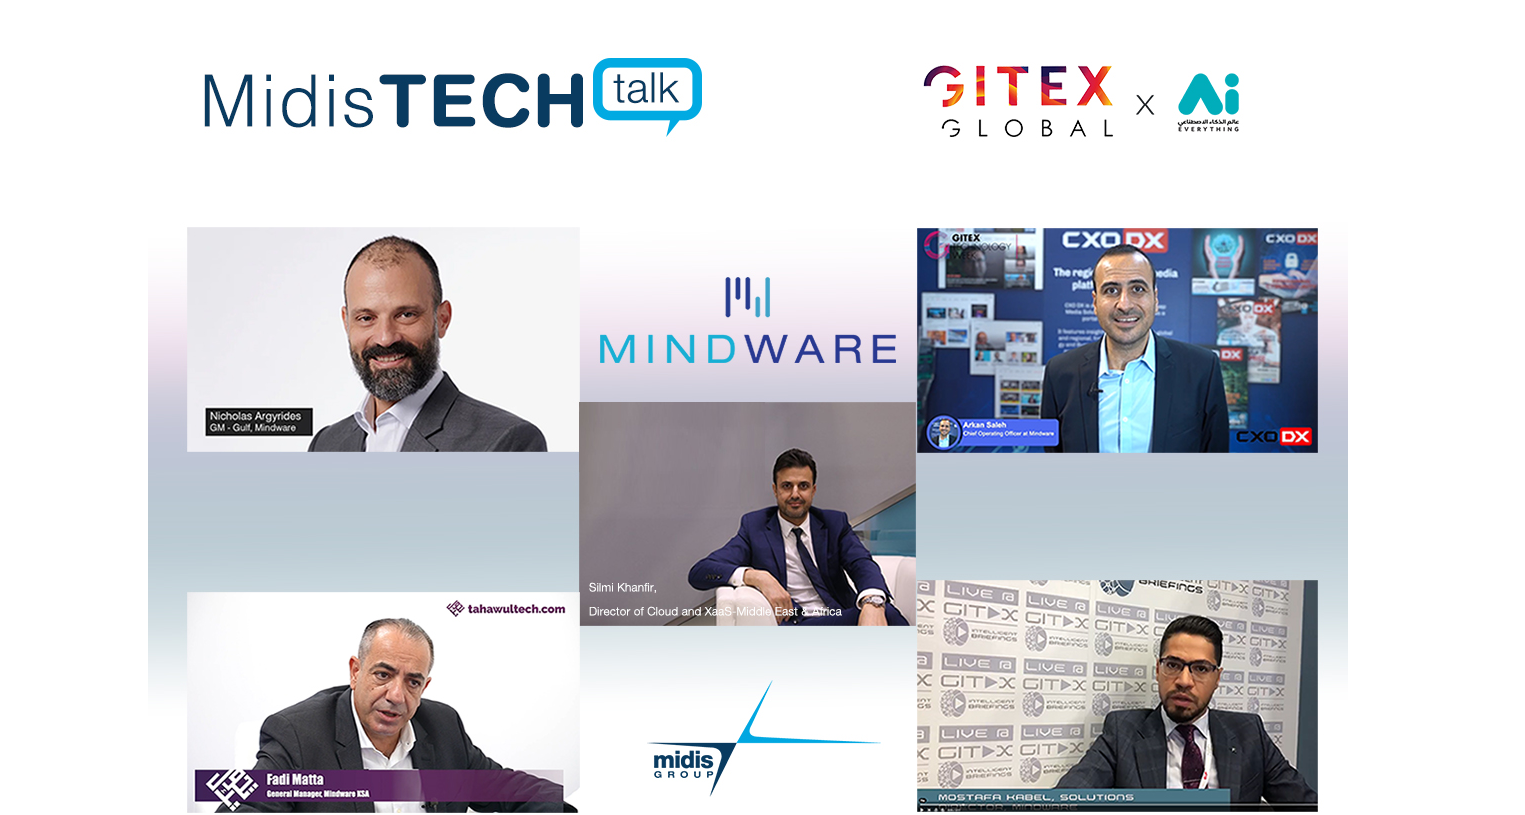 L'équipe de direction de Mindware, de haut à gauche jusqu’en bas à droite : Nicholas Argyrides, Silmi Khanfir, Arkan Saleh, Fadi Matta, Mostafa Kabel. Crédit photo: Midis Group